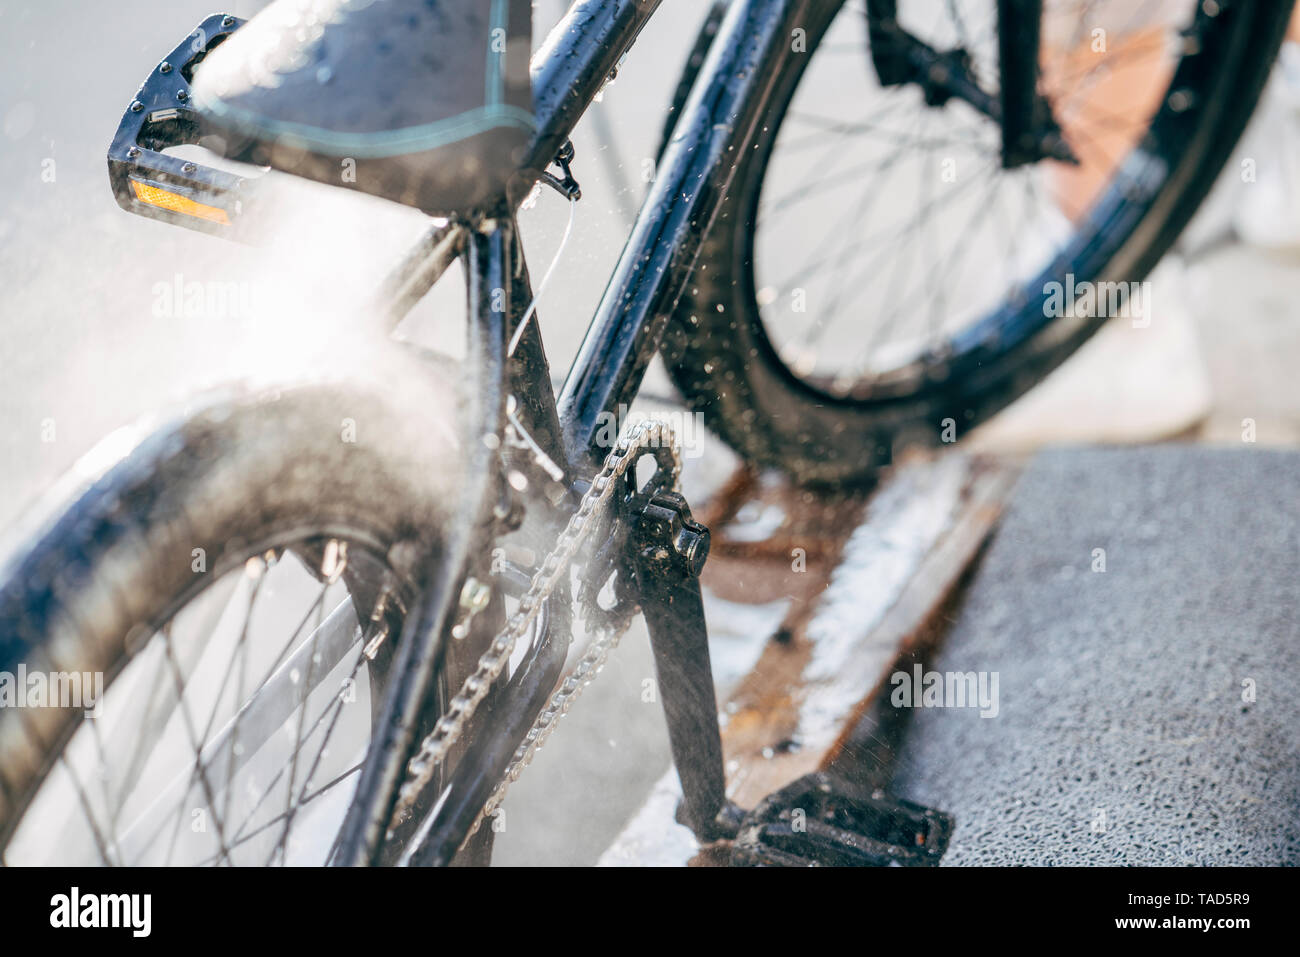 Washing bmx bike Stock Photo